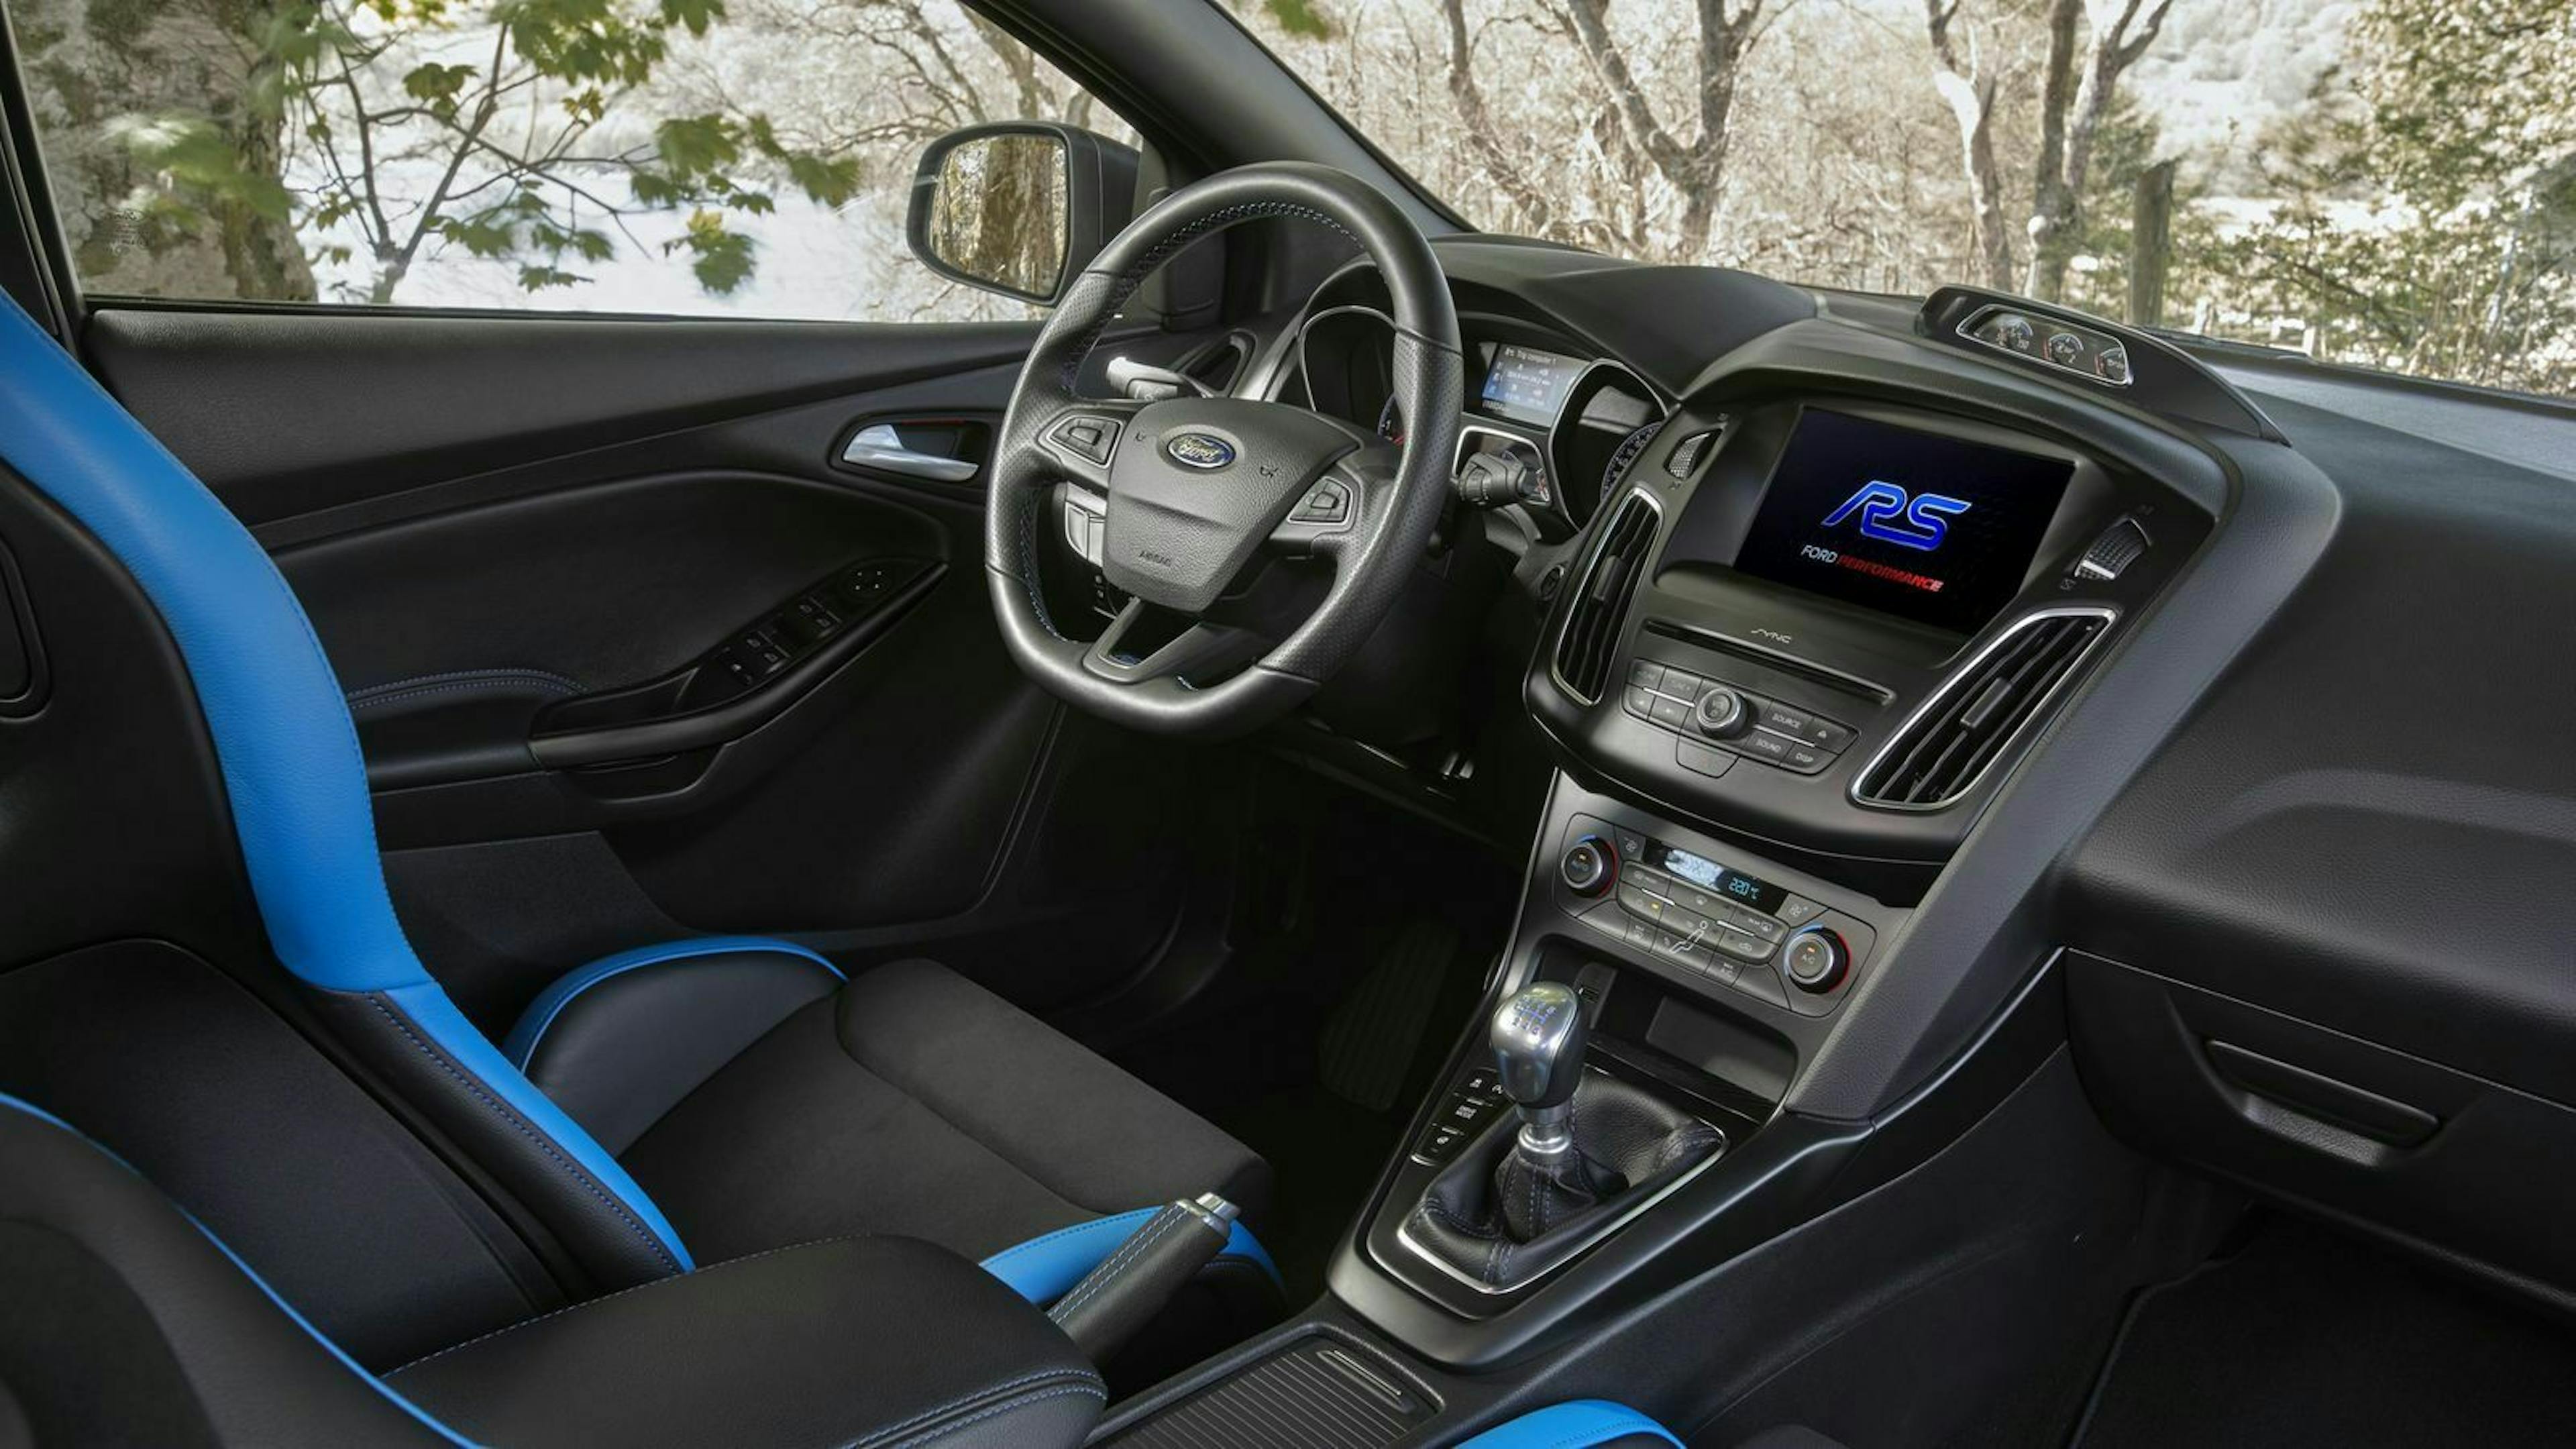 Zu sehen ist das Cockpit des Ford Focus RS MK III